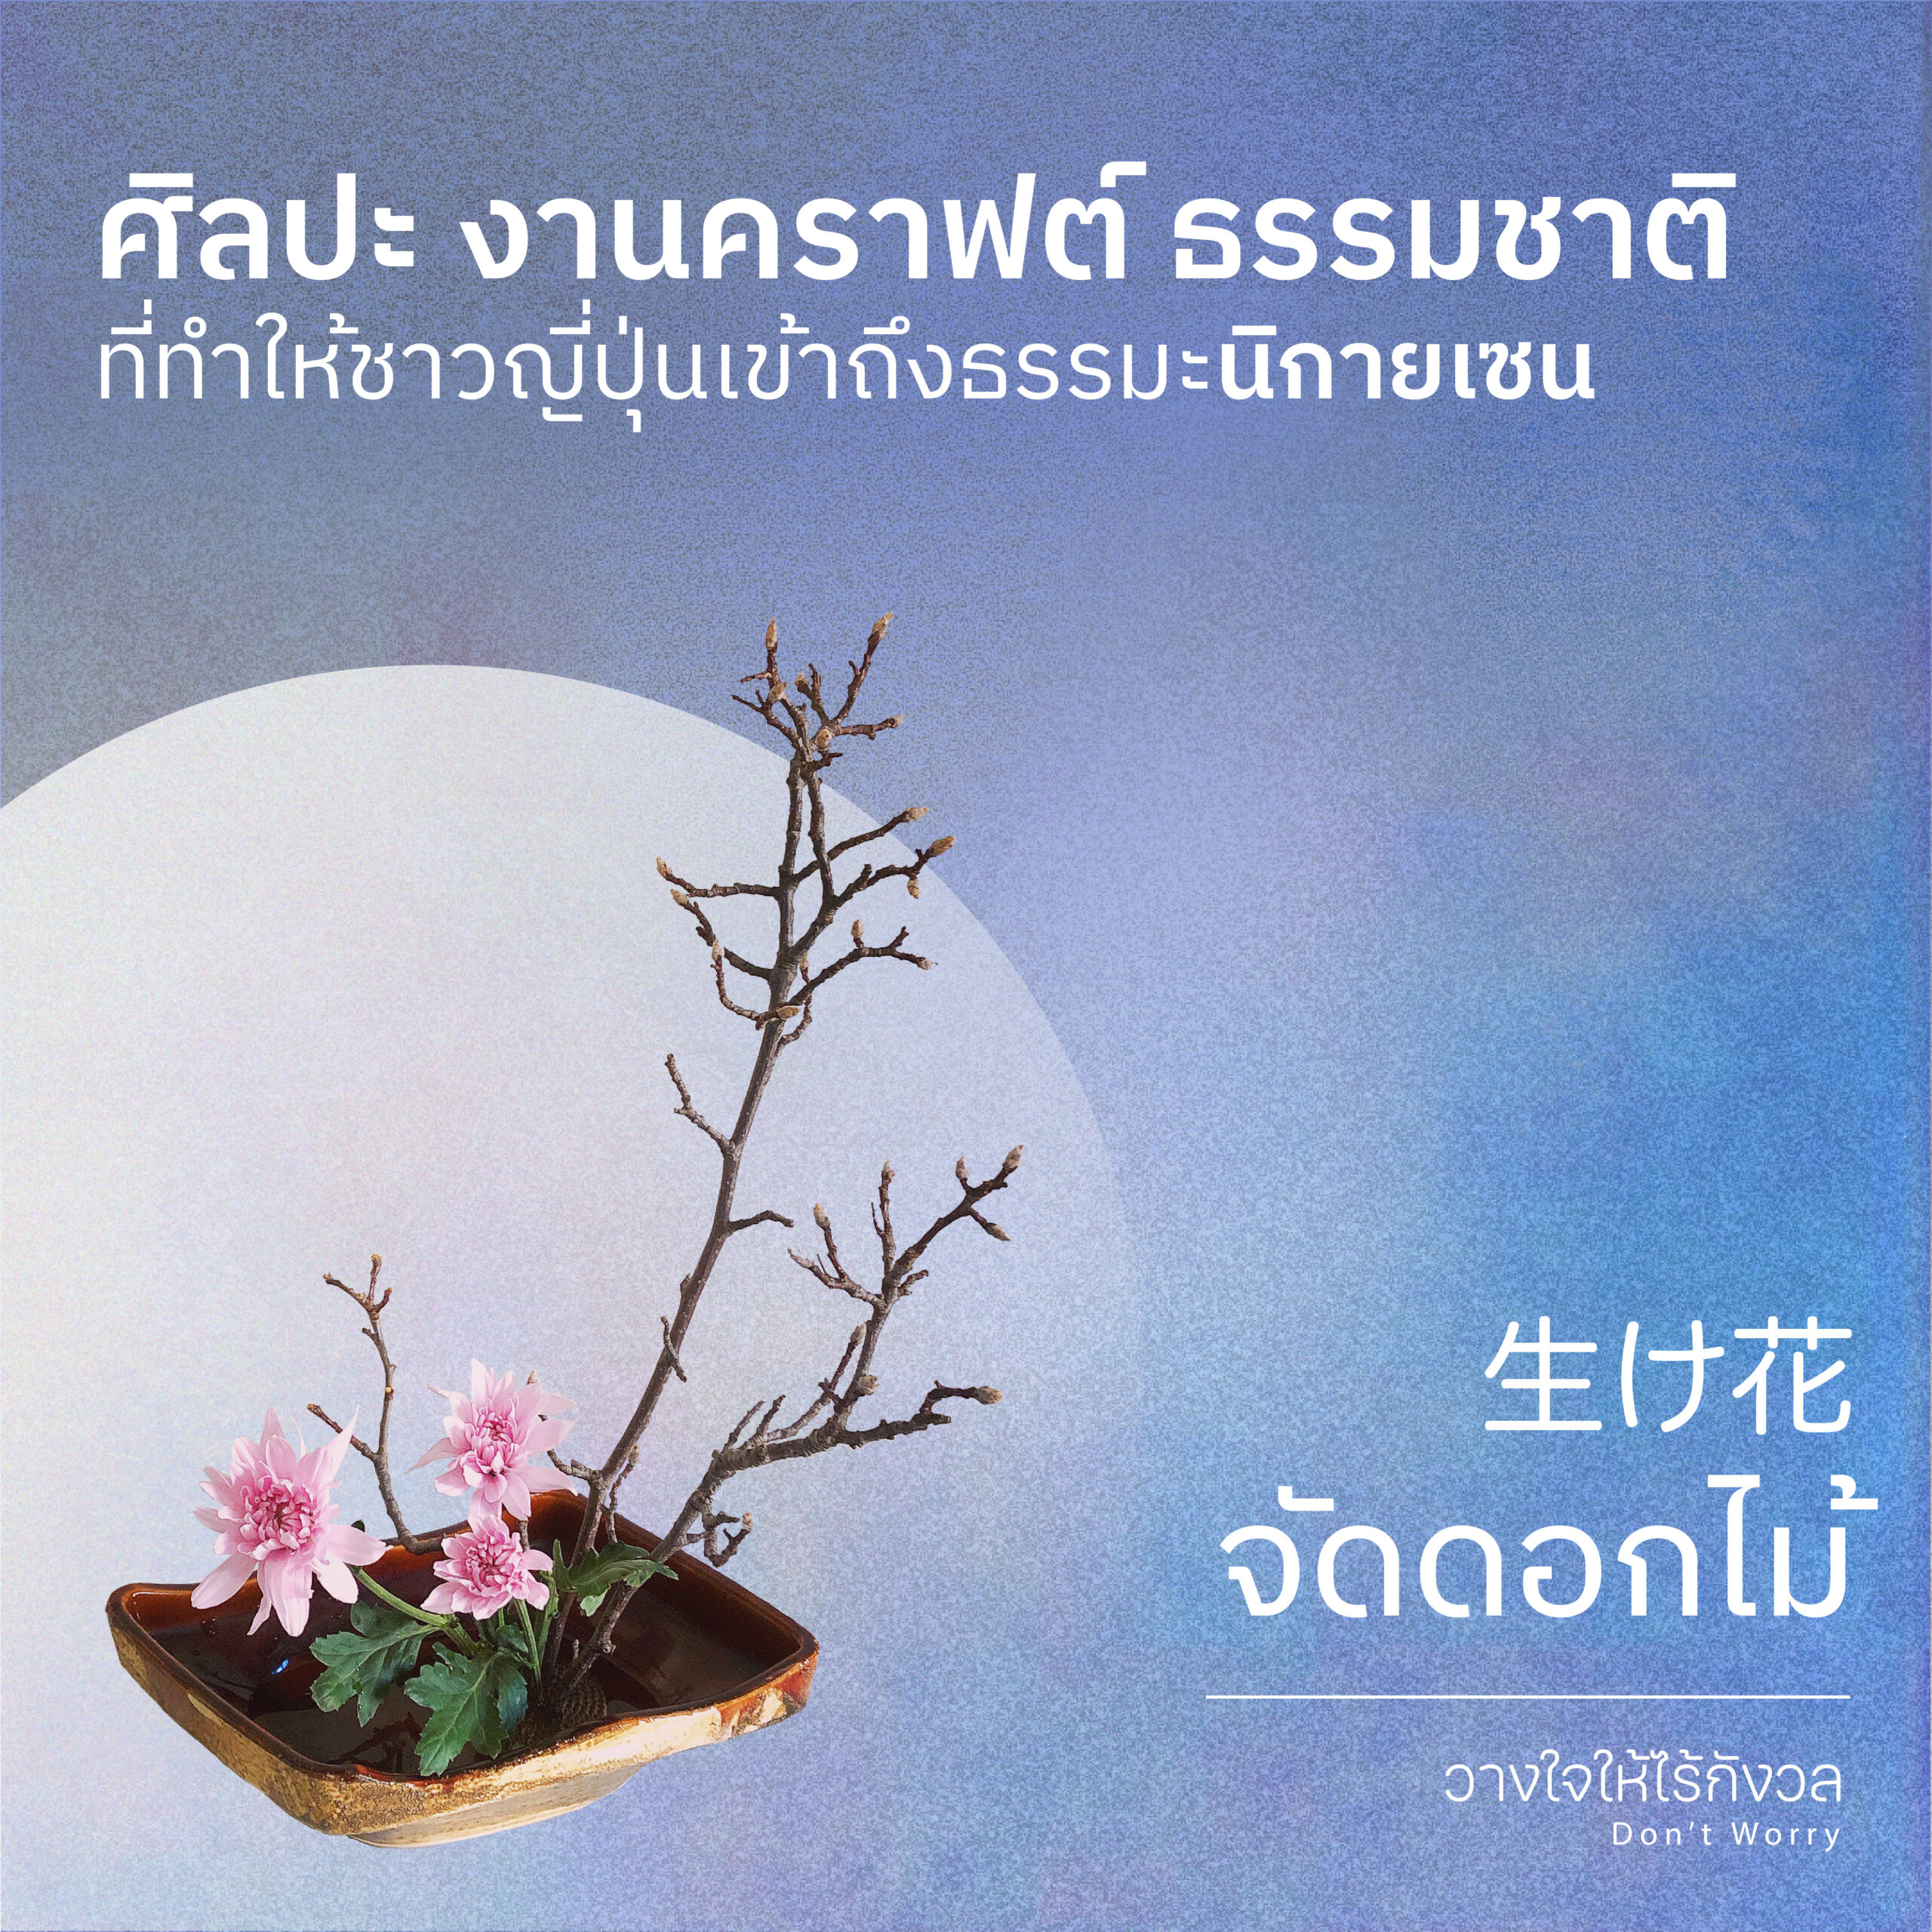 กระบวนการของเซน : จัดดอกไม้ พิธีชงชา จัดสวนเซน แต่งบทกวียูอิเงะ